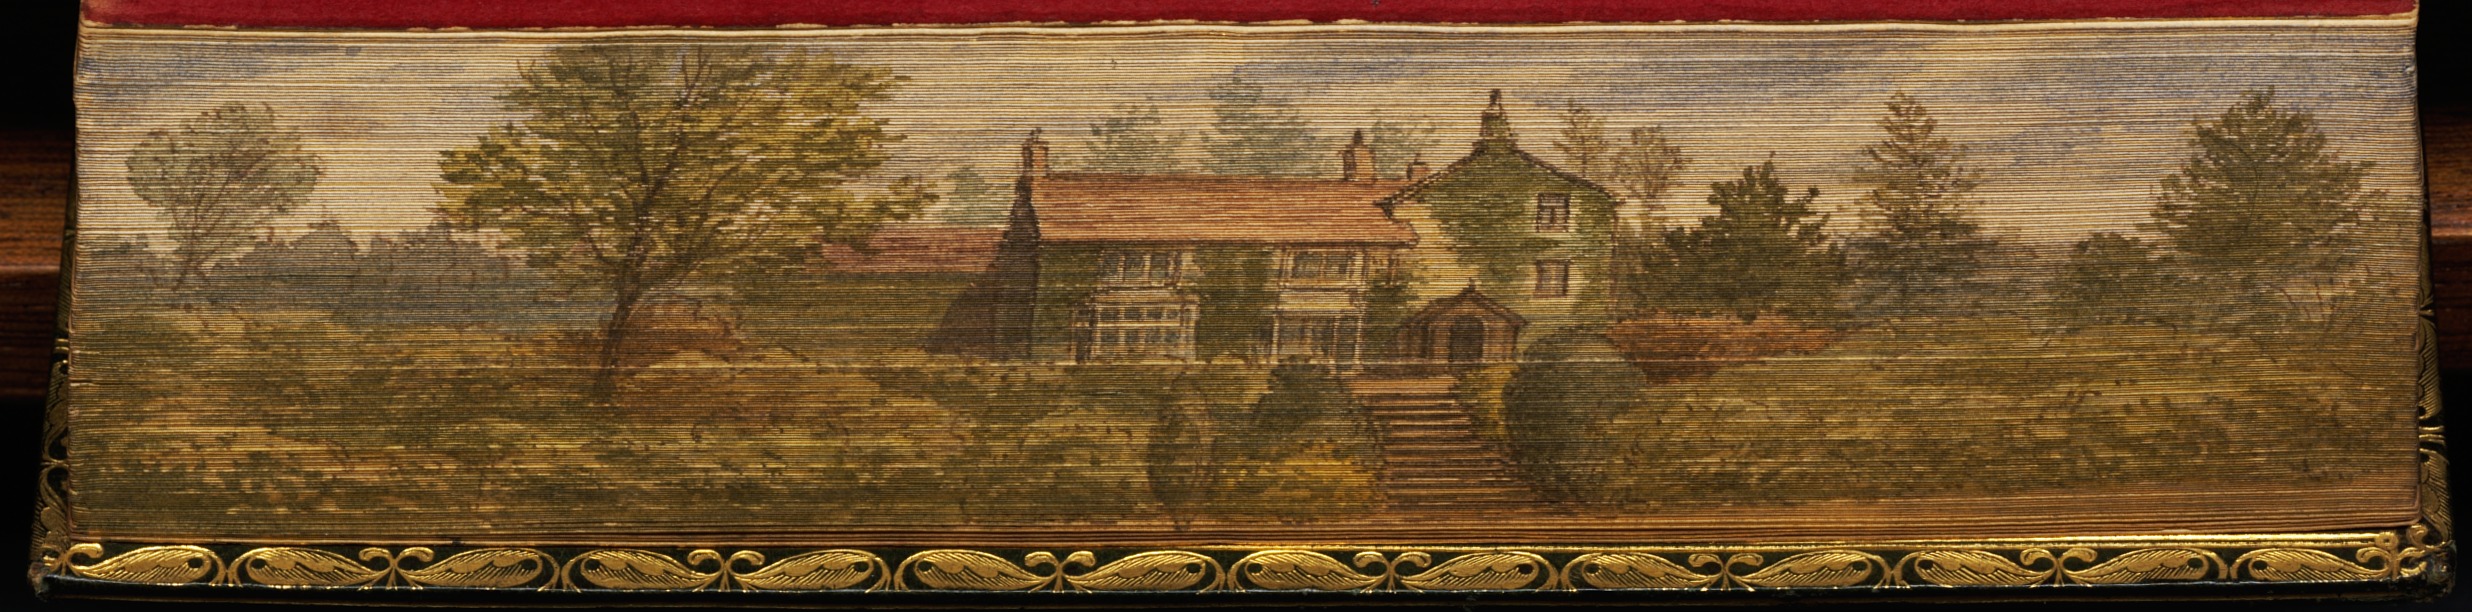 Wordsworth’s cottage at Grasmere